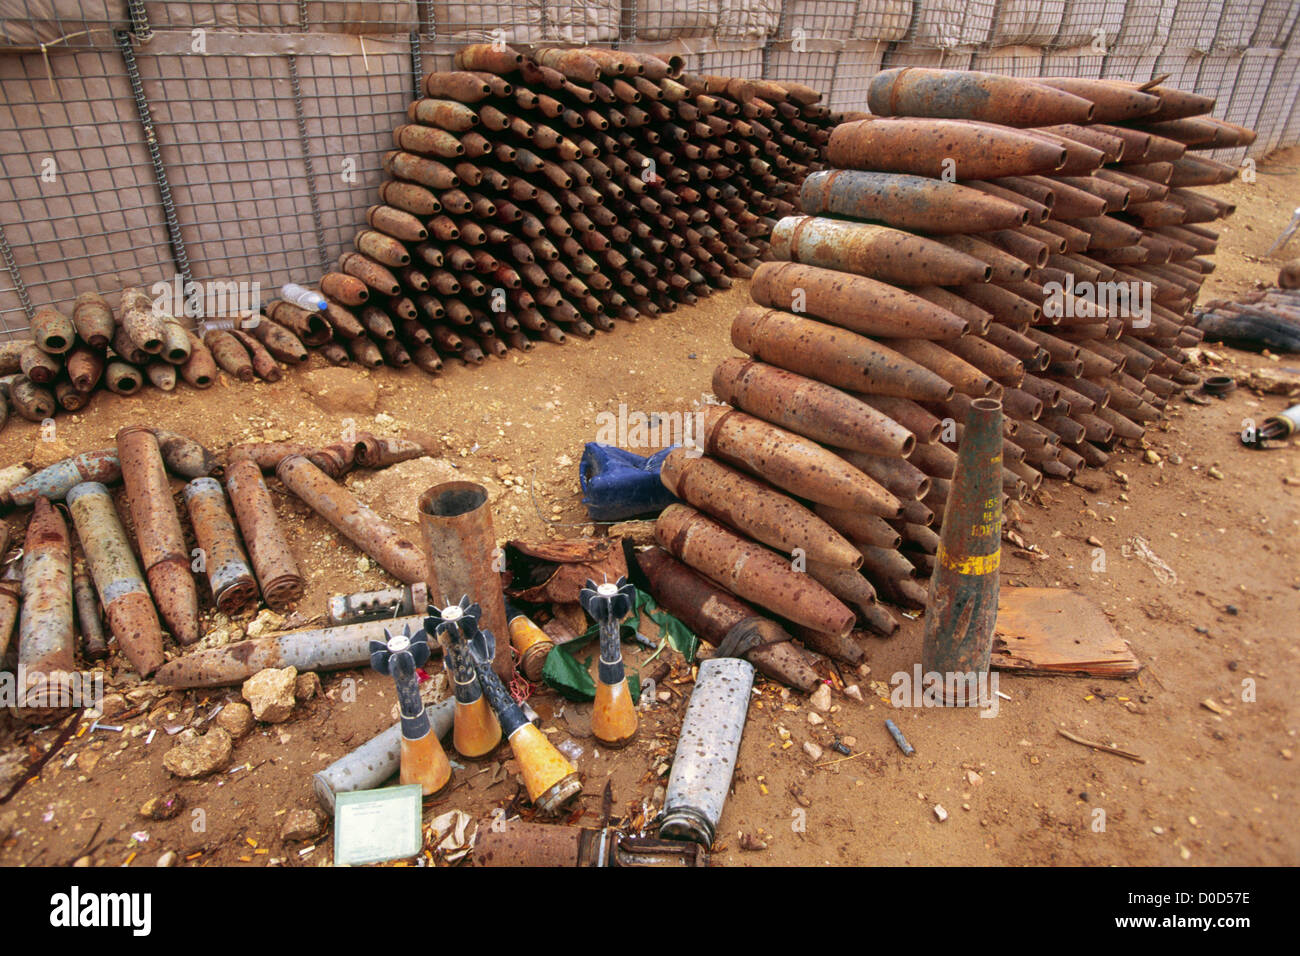 Artiglieria catturata tornate, colpi di mortaio e attrezzature destinate ad essere utilizzate per congegni esplosivi improvvisati, Barwana, Iraq Foto Stock